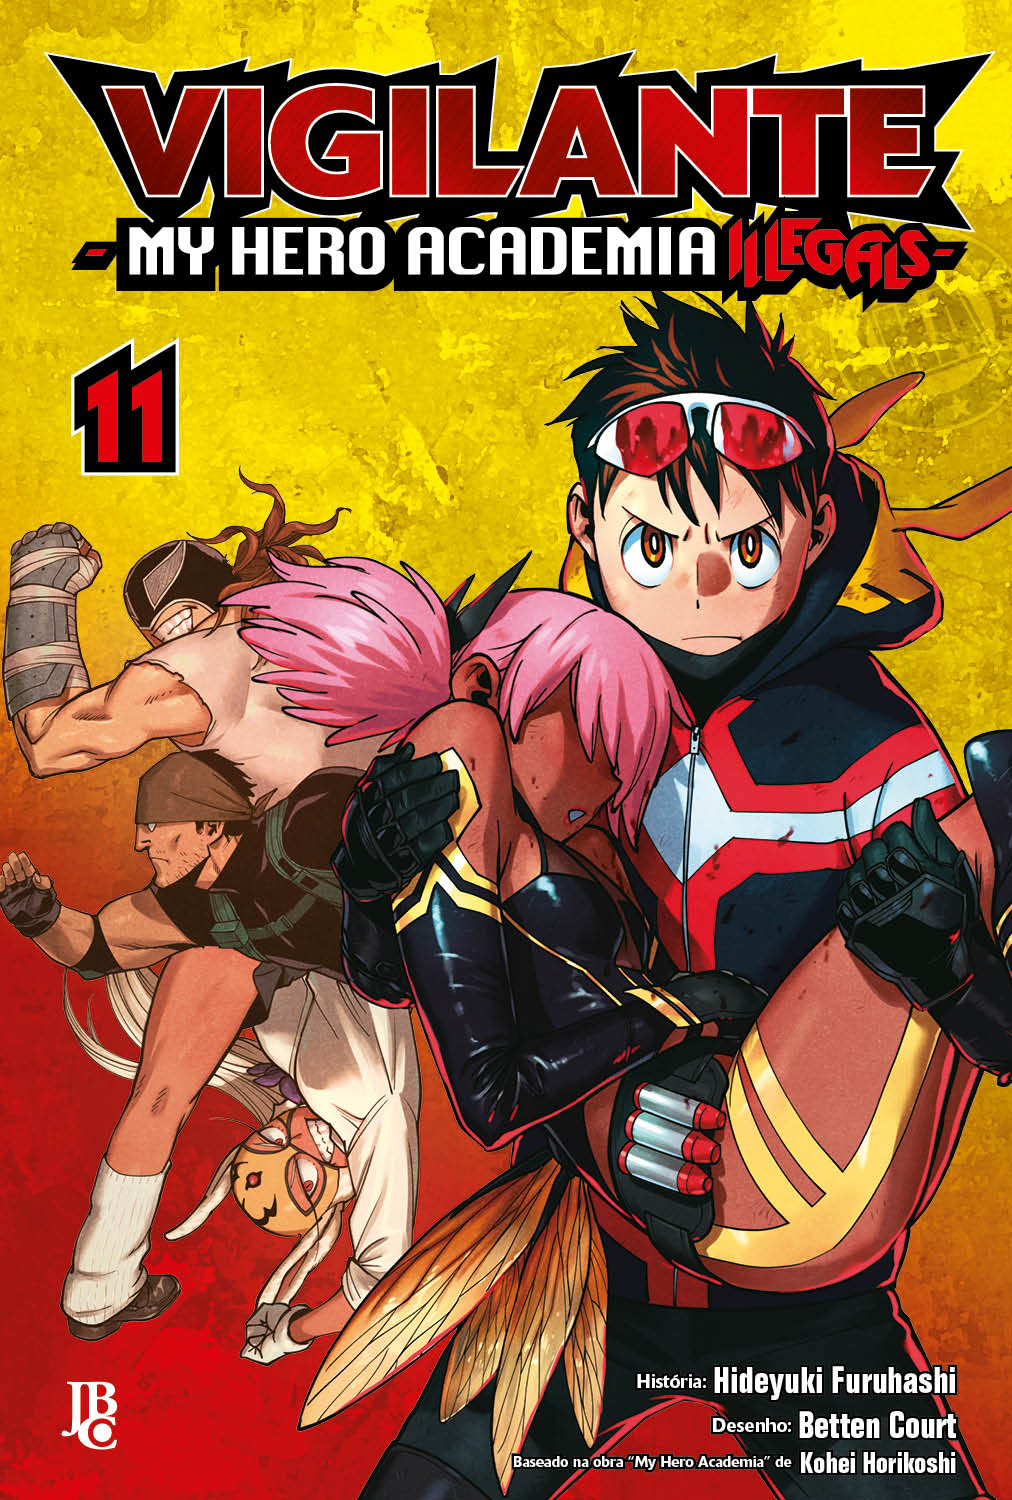 Héroes e My Home Hero serão publicados no Brasil pela Editora JBC